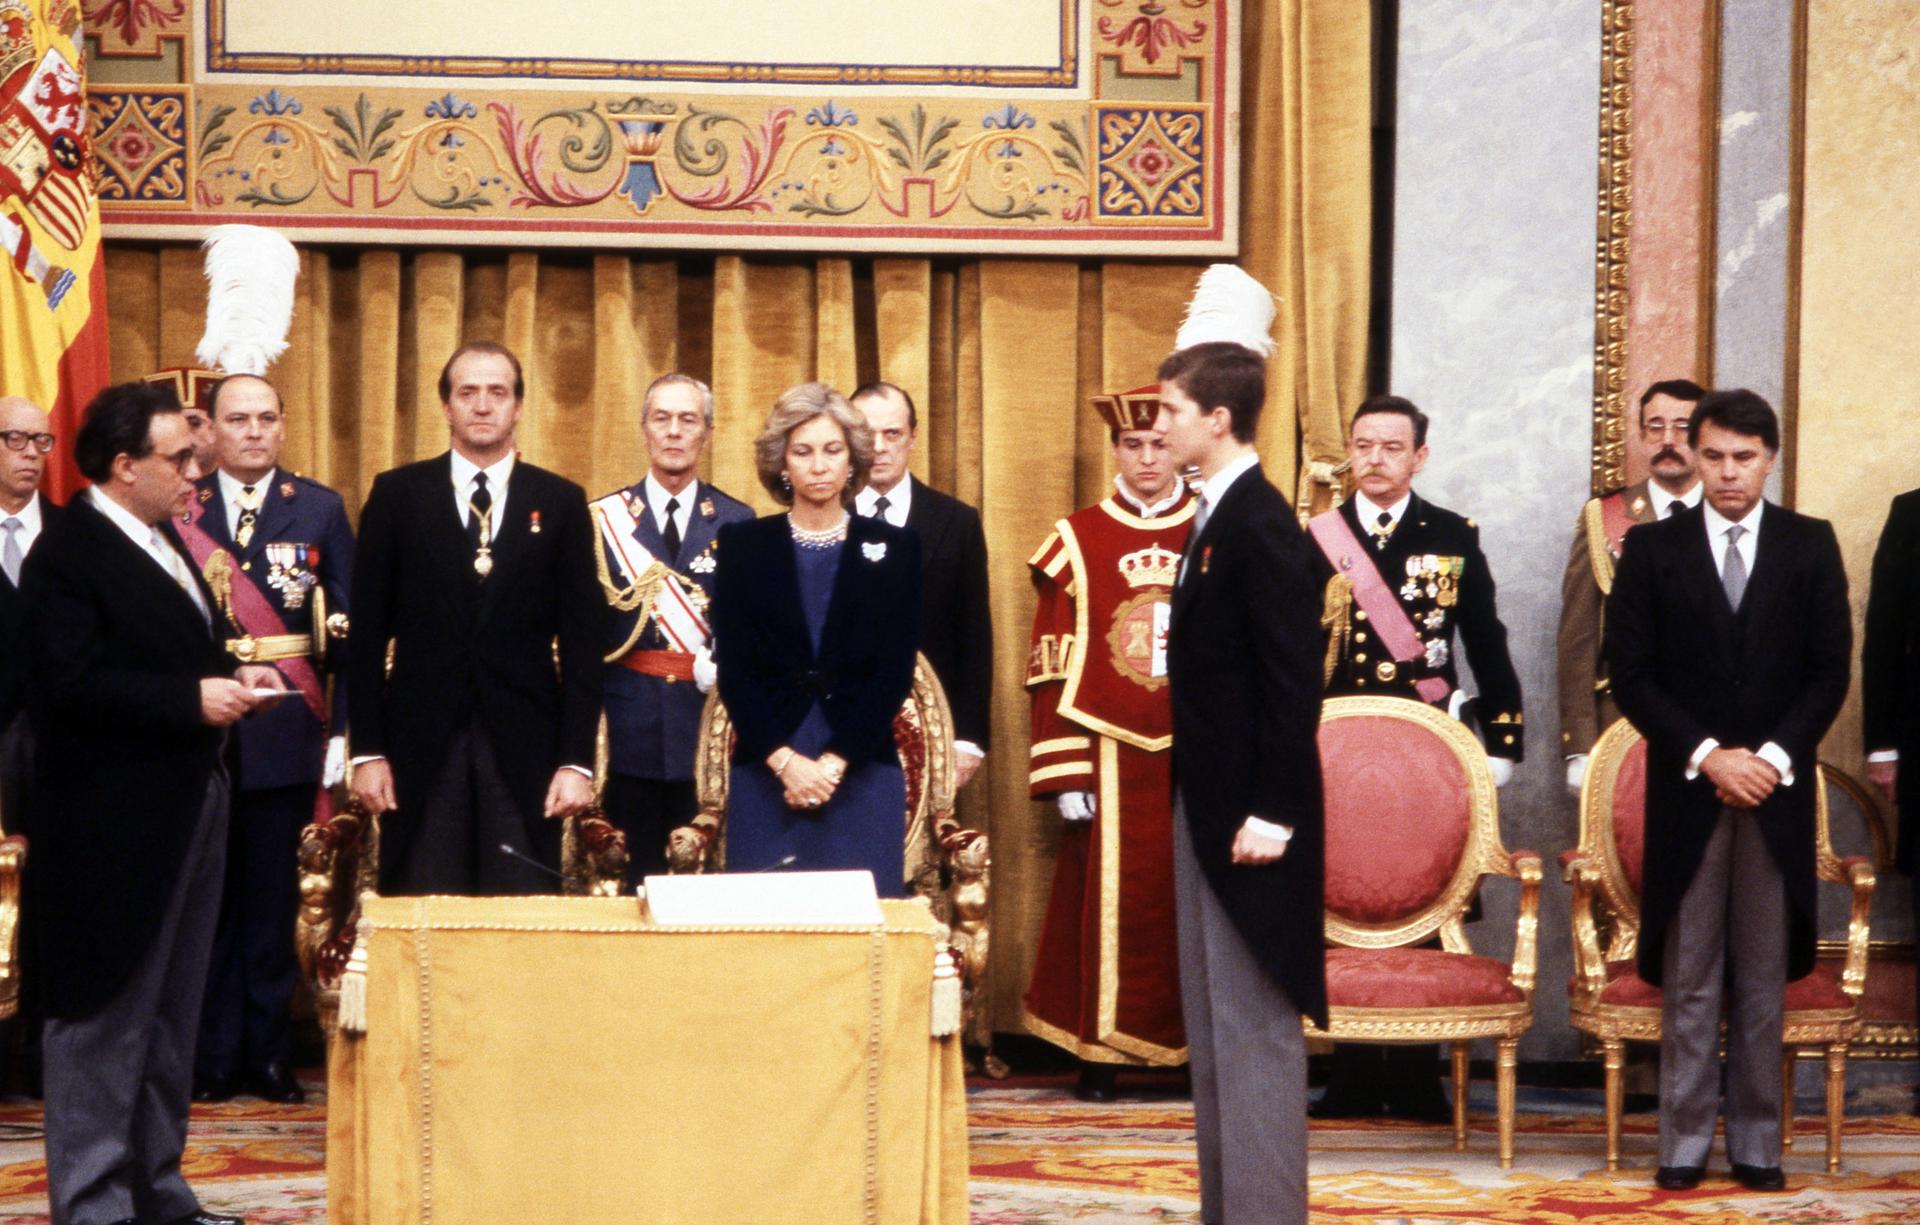 El juramento de 1986: un guion similar al de Leonor en un contexto político muy distinto